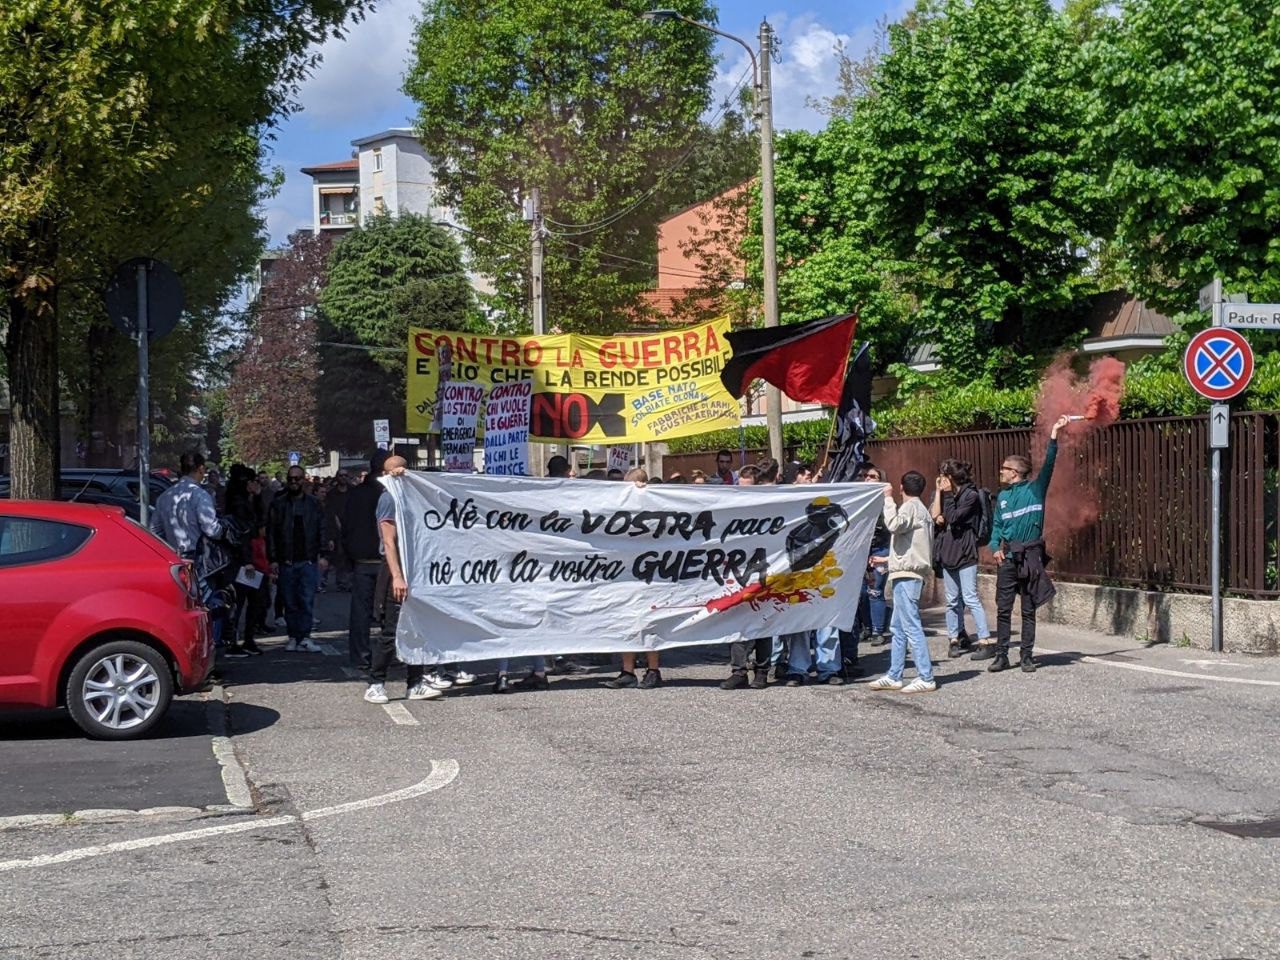 25 aprile: antifascisti lasciano la piazza contestando. Secondo corteo per il centro di Saronno (video e foto)